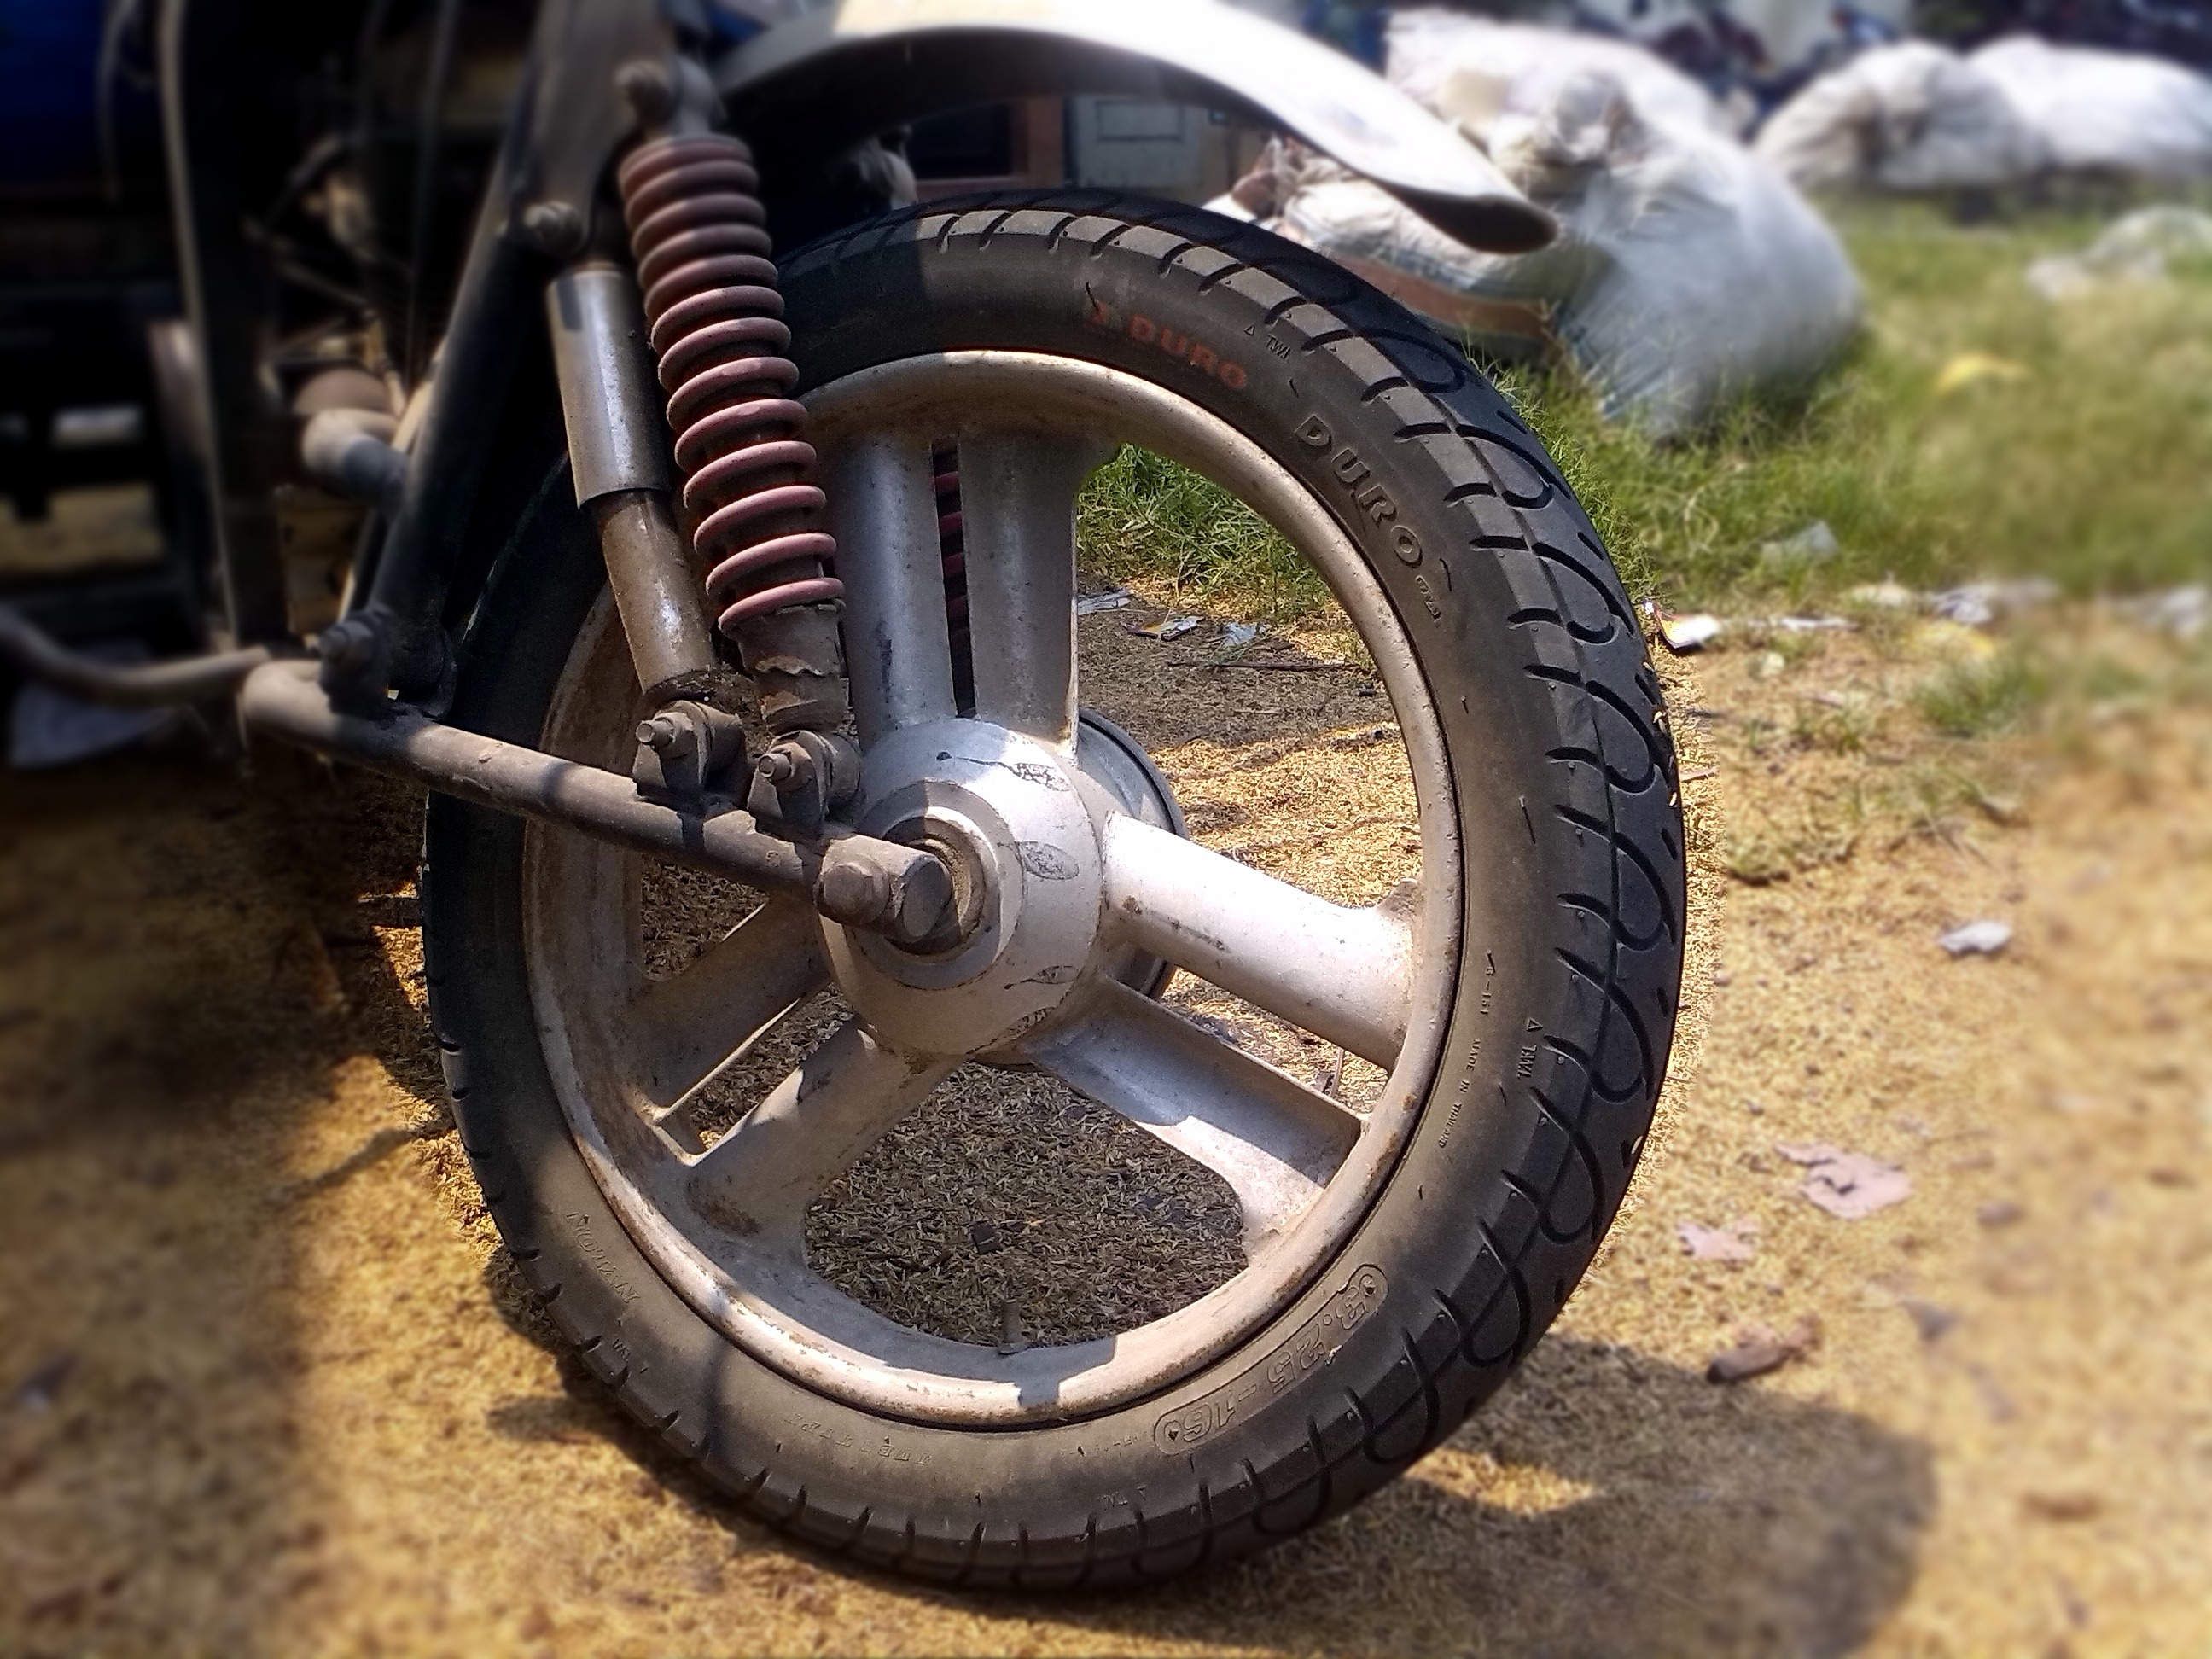 Изготовление колеса для мотоцикла с нуля